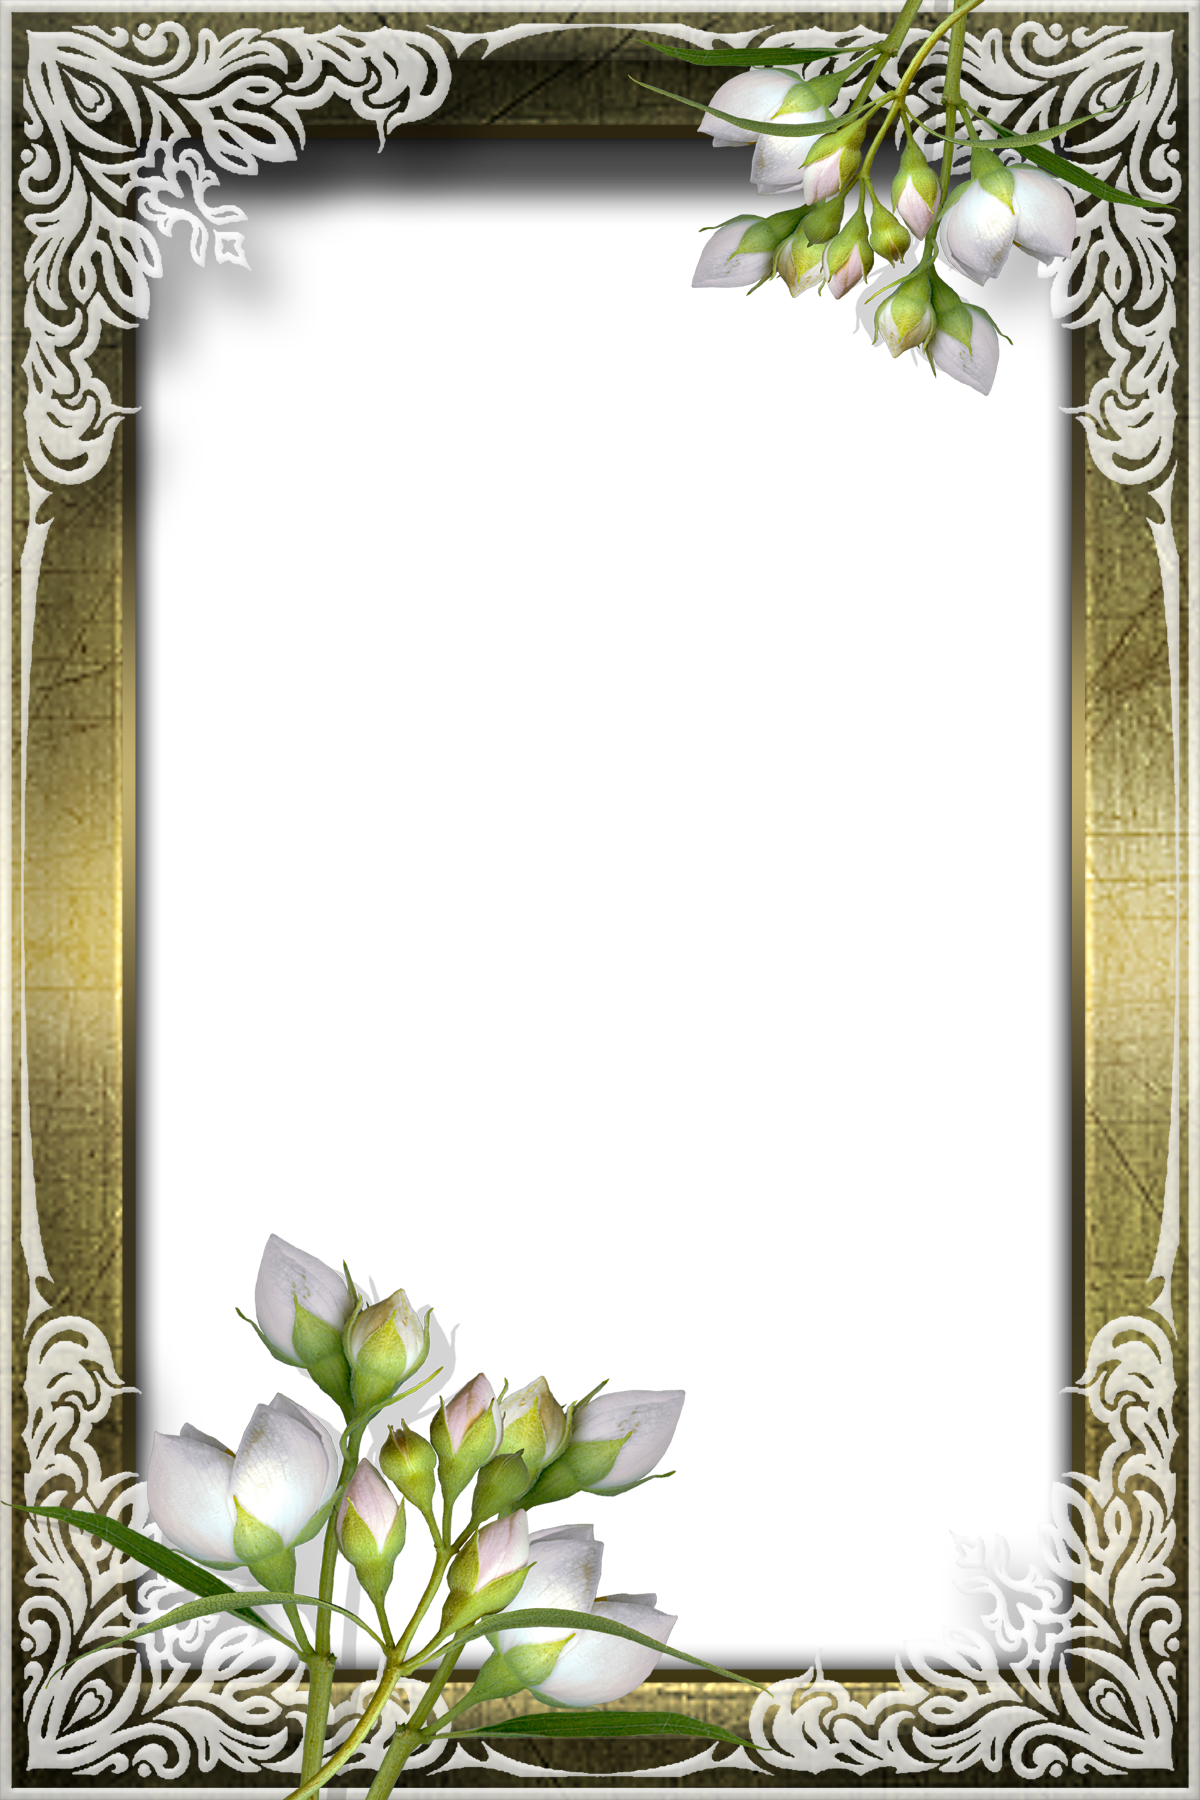 花や葉の写真 画像 フリー素材 フレーム枠no 1149 薄紫 つぼみ 木枠